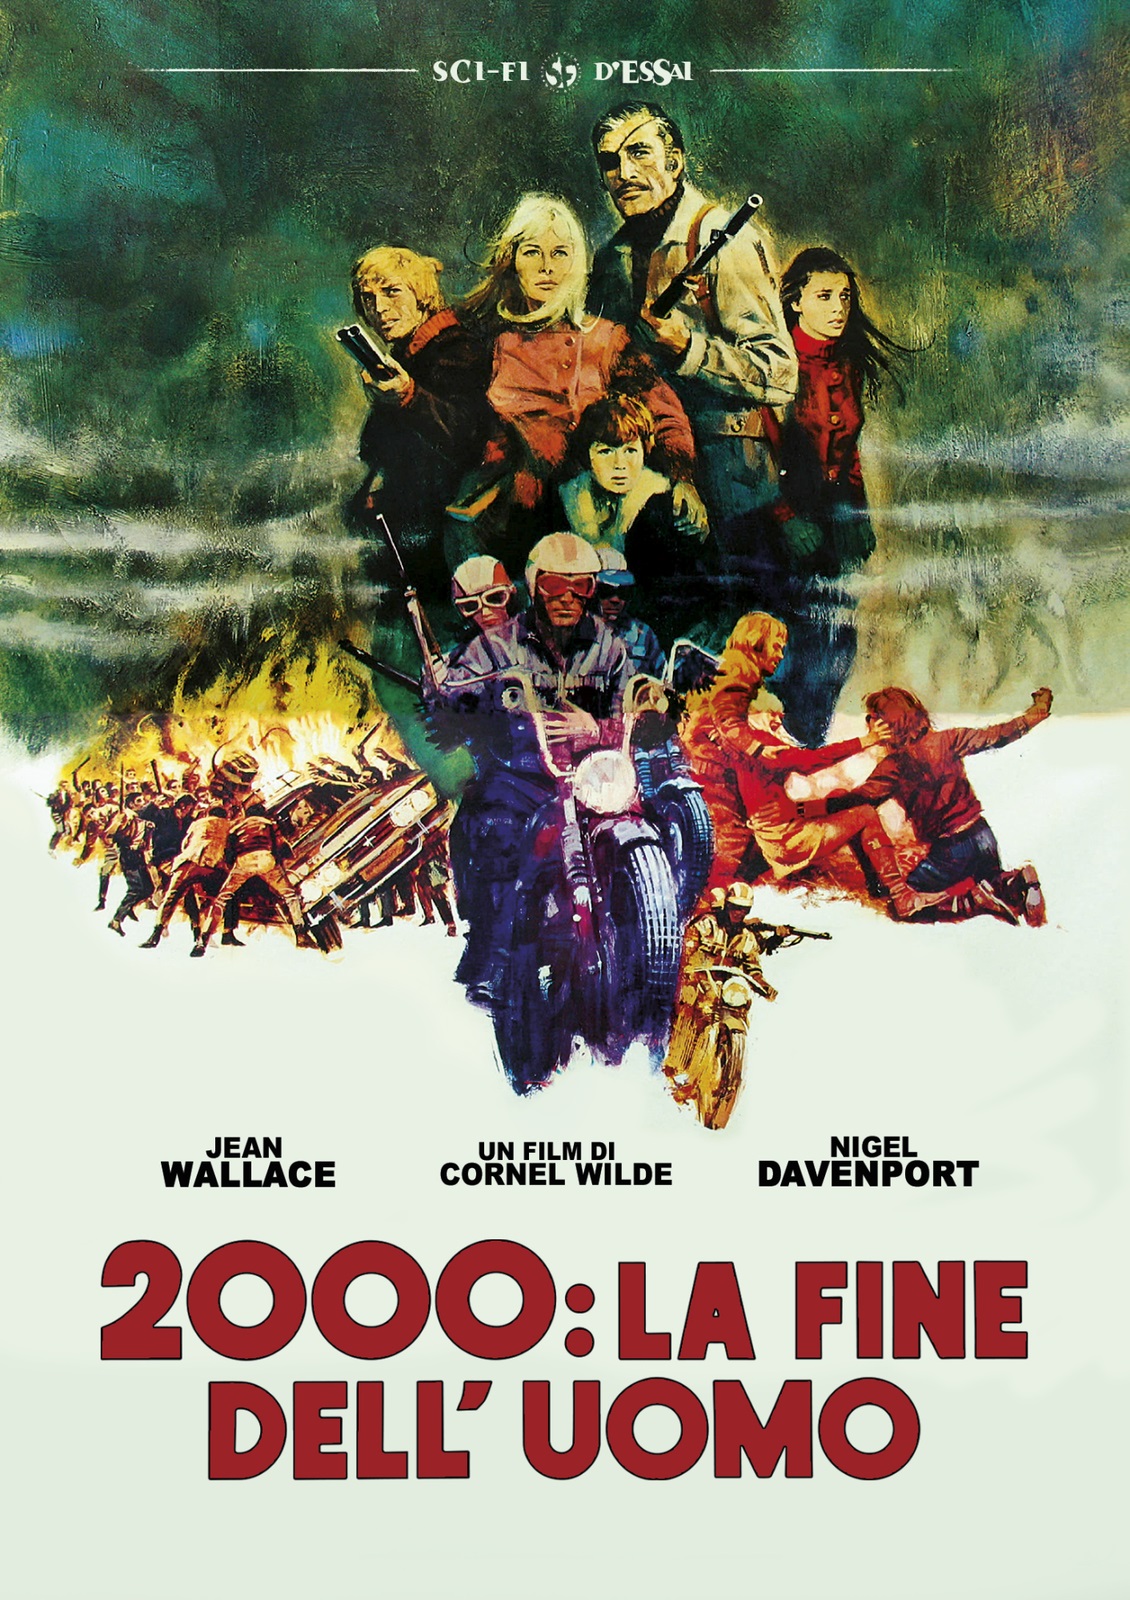 2000: La fine dell’uomo (1970)